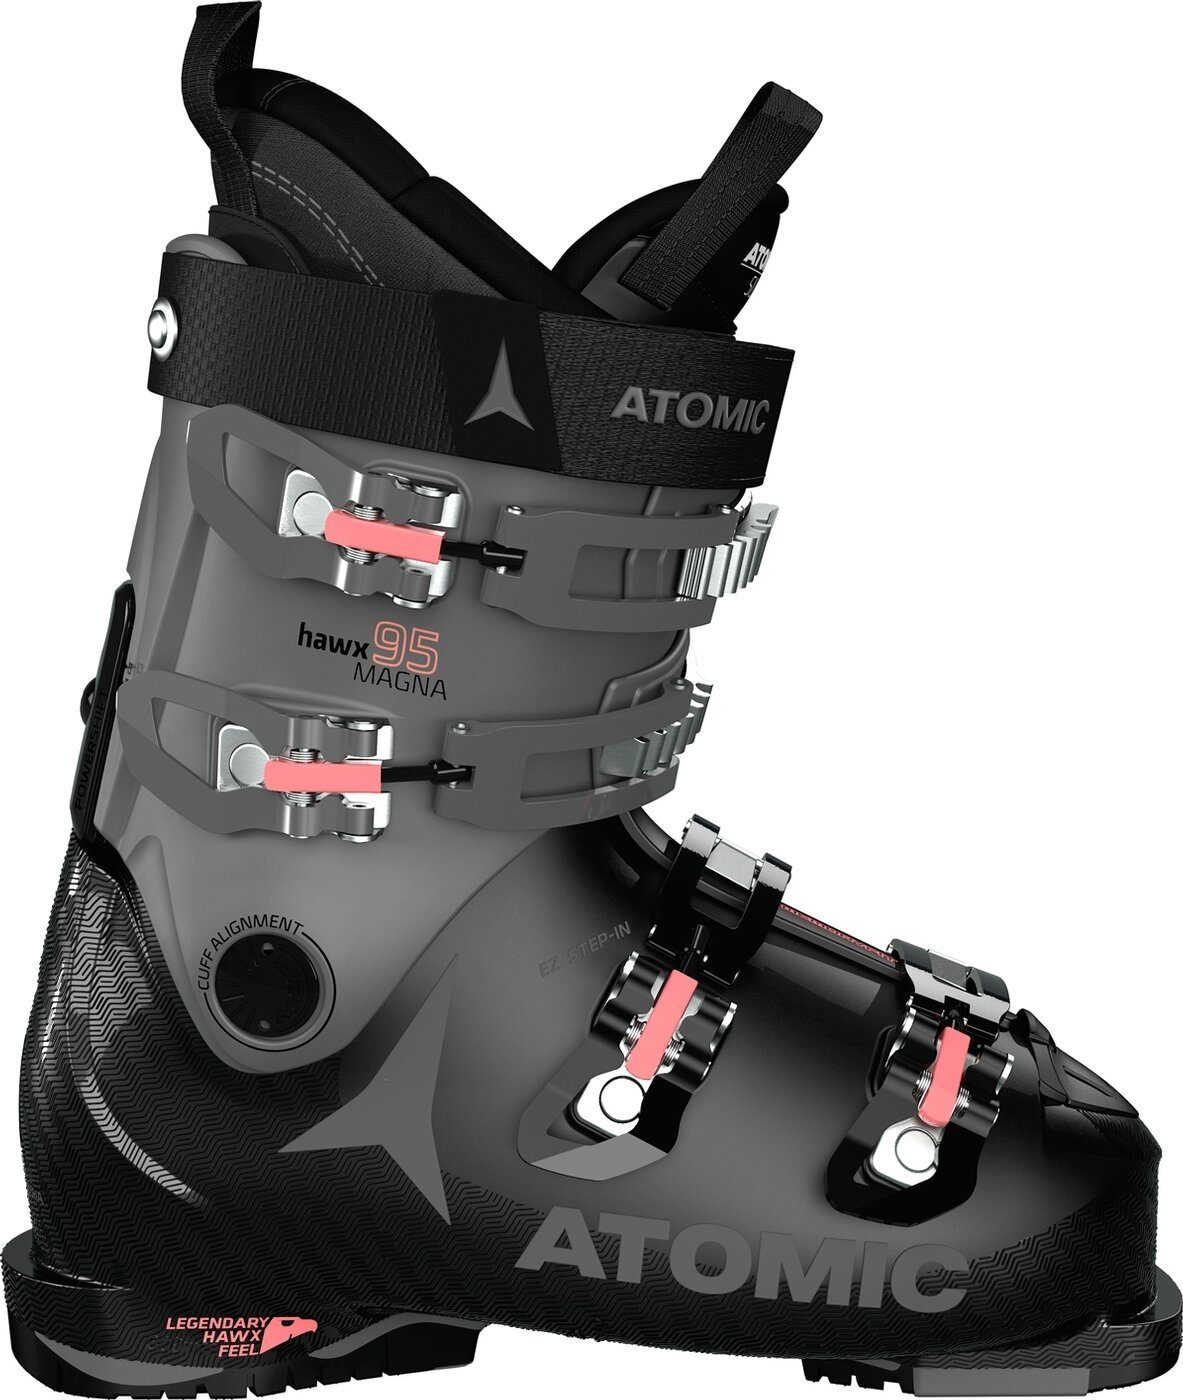 Atomic HAWX MAGNA 95 S W - Damen Skischuhe - Black/Anthracite/Coral Skischuh